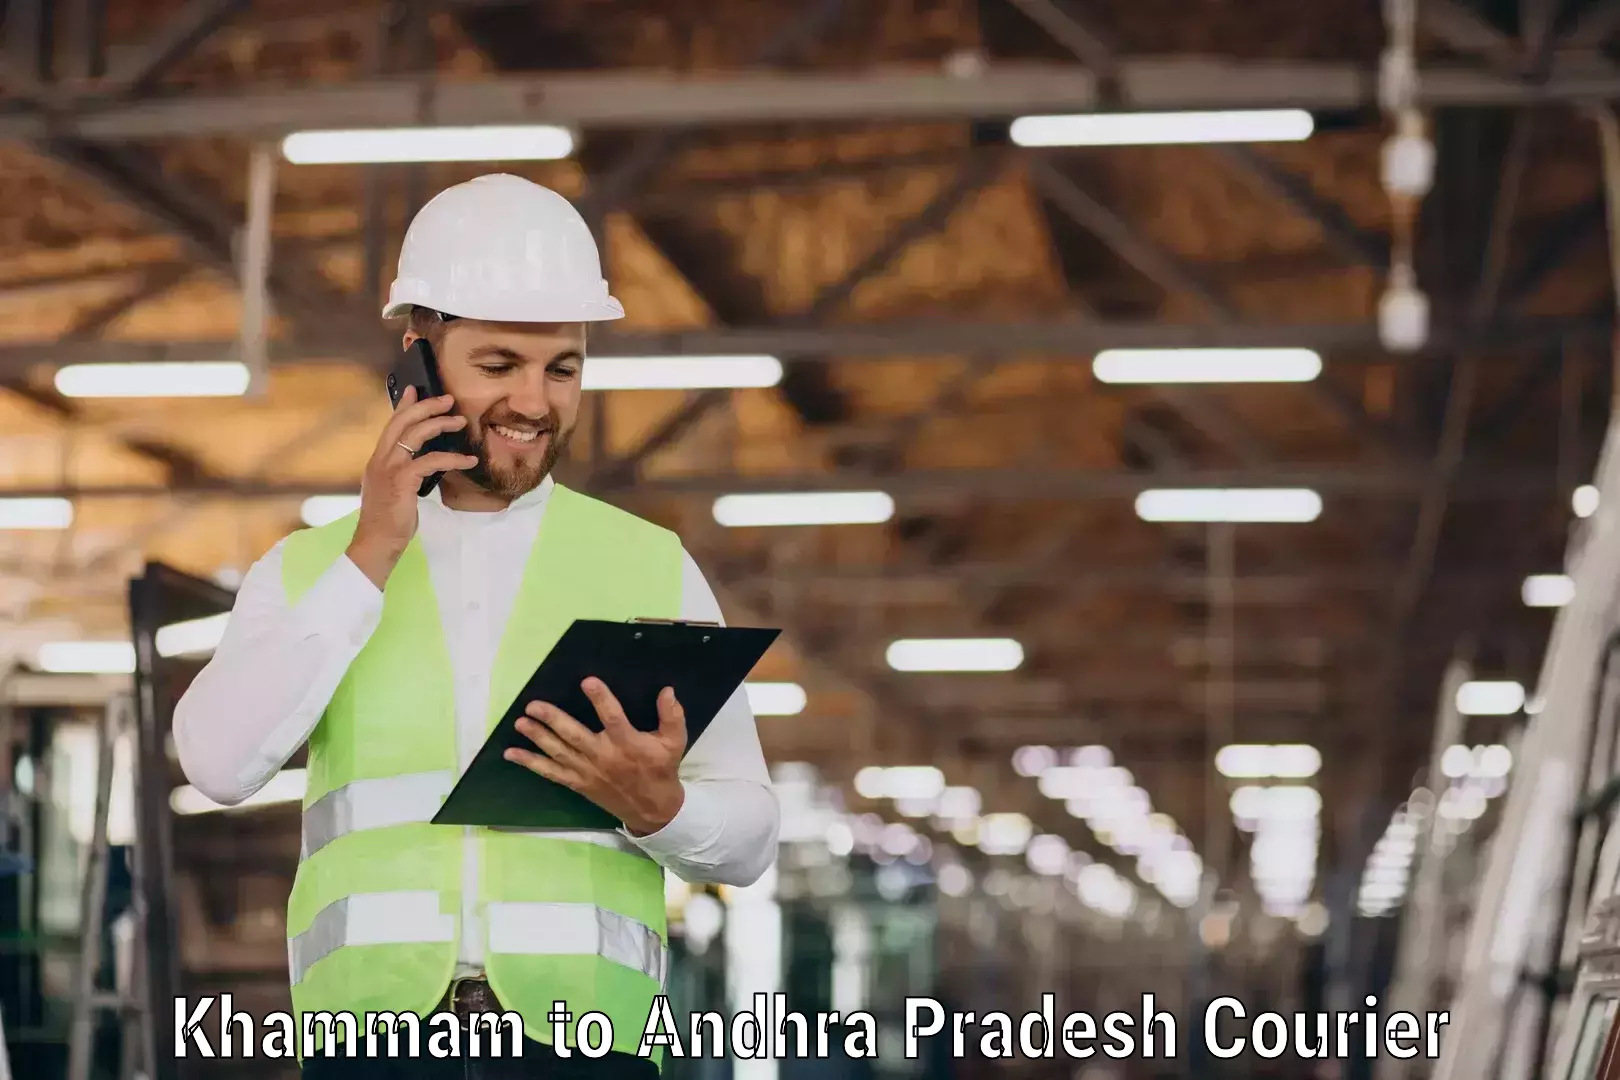 Quality courier services Khammam to Andhra Pradesh